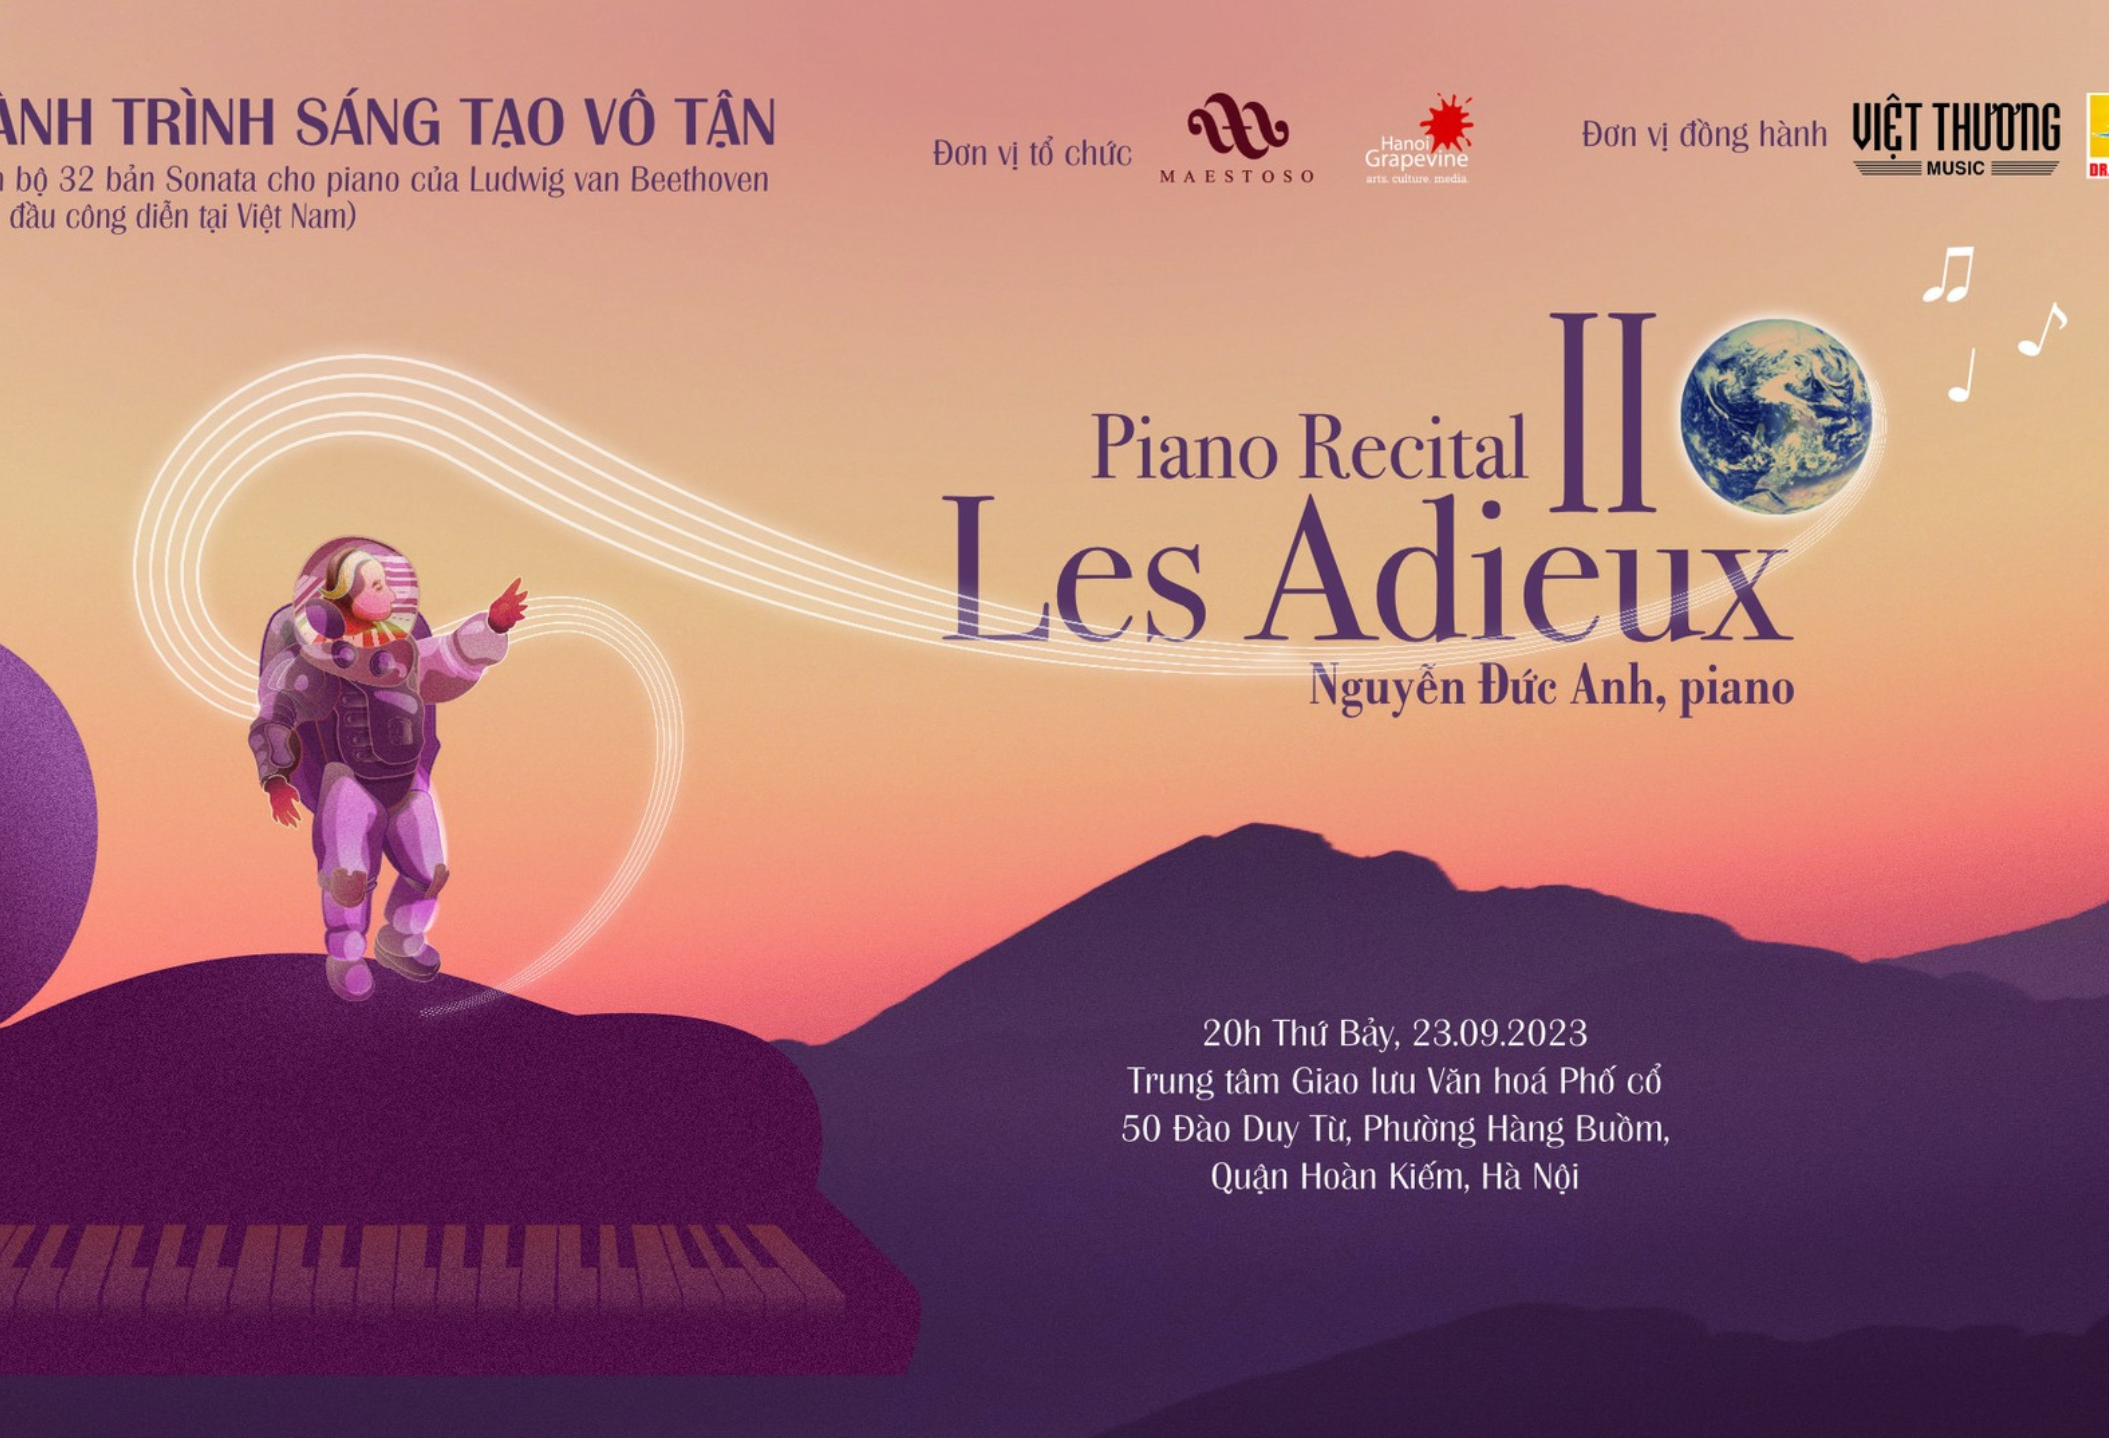 Les Adieux – Chương trình độc tấu piano lần đầu công diễn tại Việt Nam